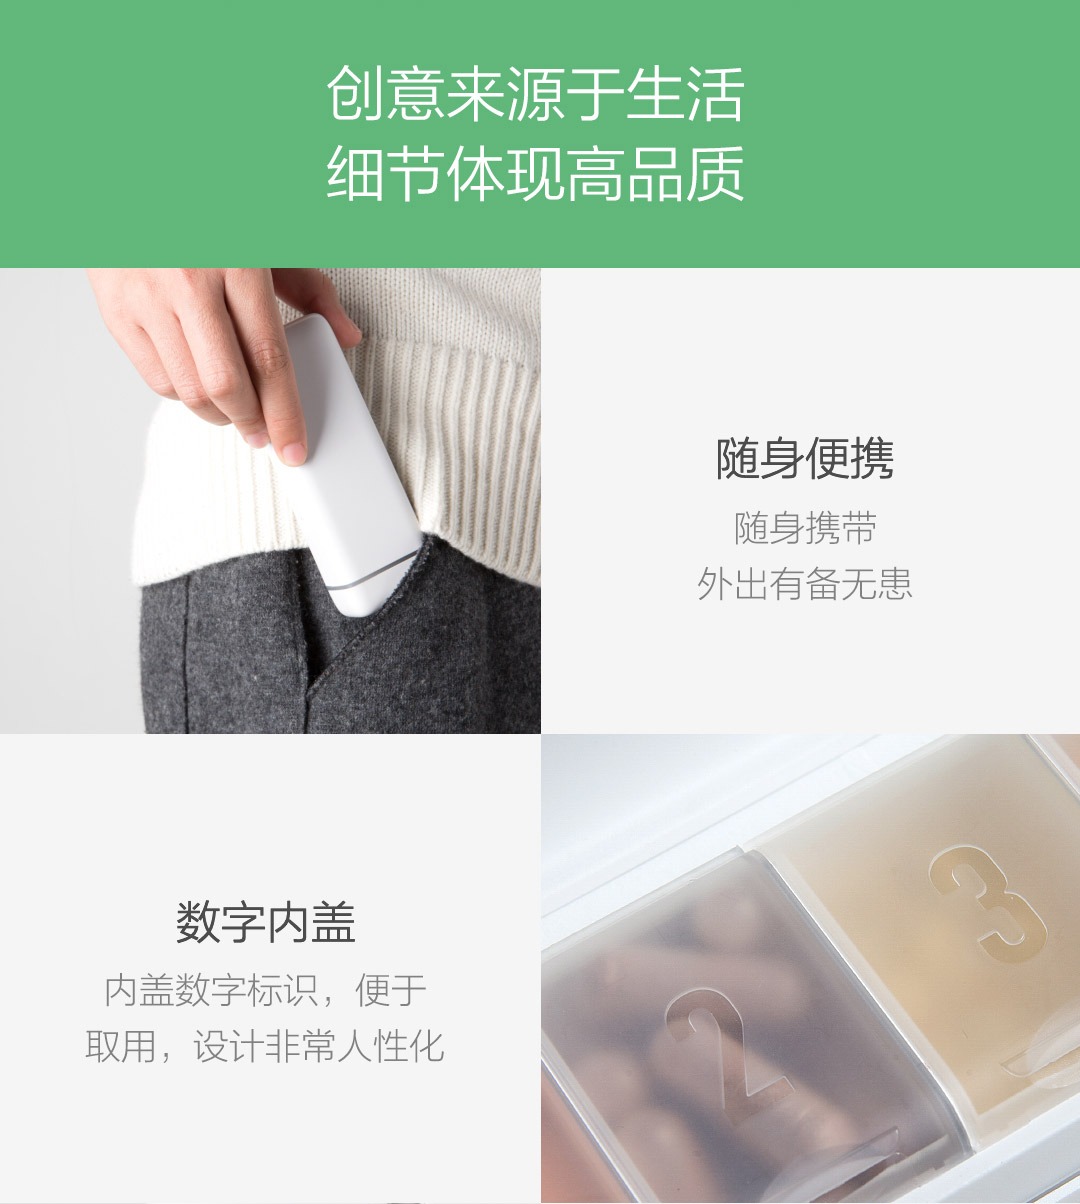 product_奇妙_HiPee智能健康药盒31.jpg